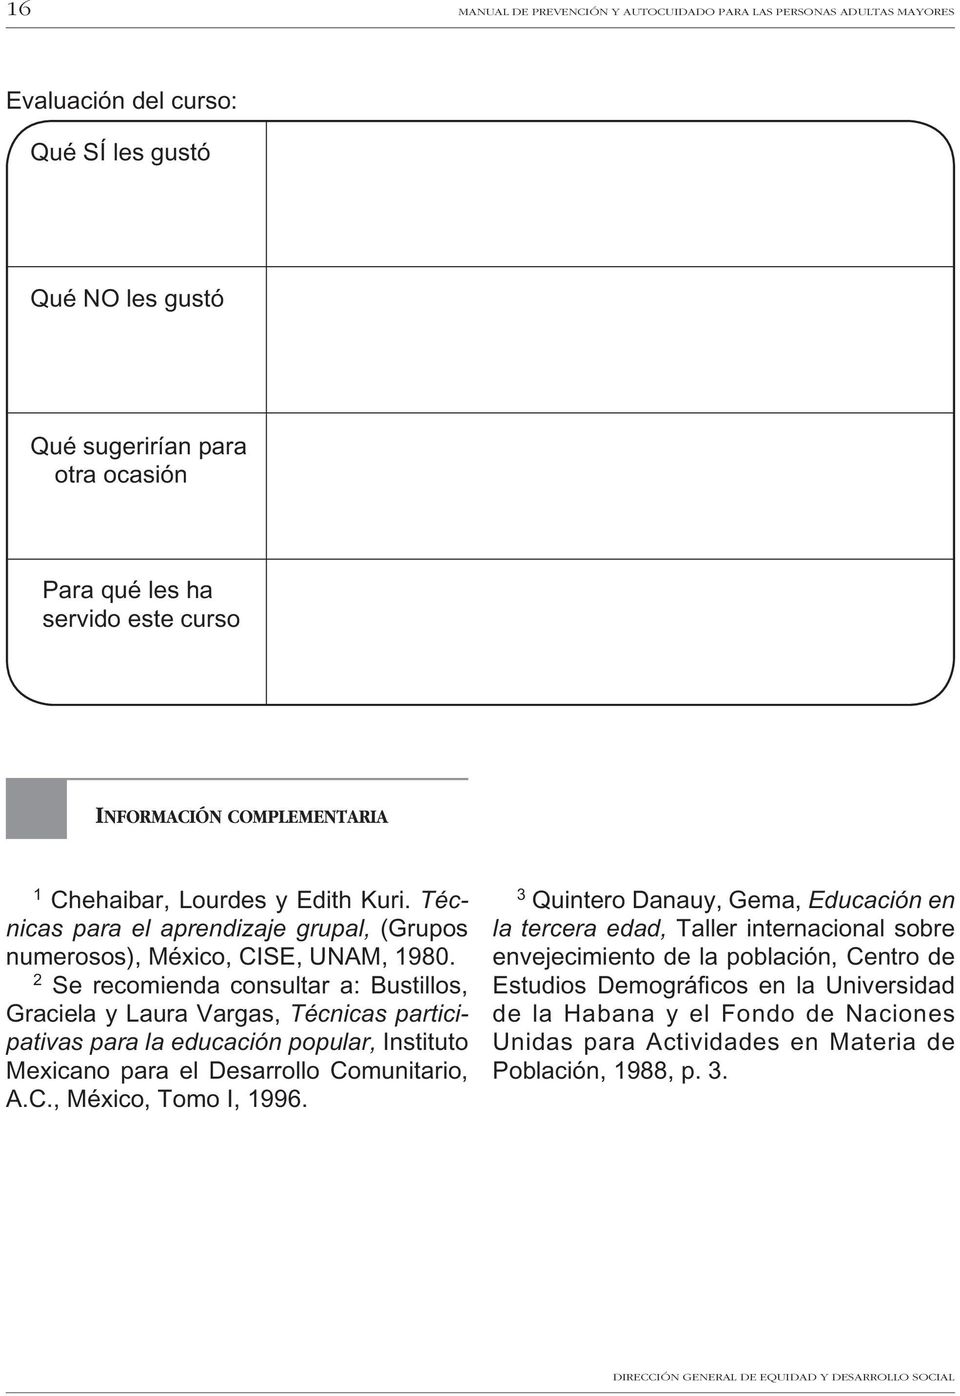 2 Se recomienda consultar a: Bustillos, Graciela y Laura Vargas, Técnicas participativas para la educación popular, Instituto Mexicano para el Desarrollo Comunitario, A.C., México, Tomo I, 1996.